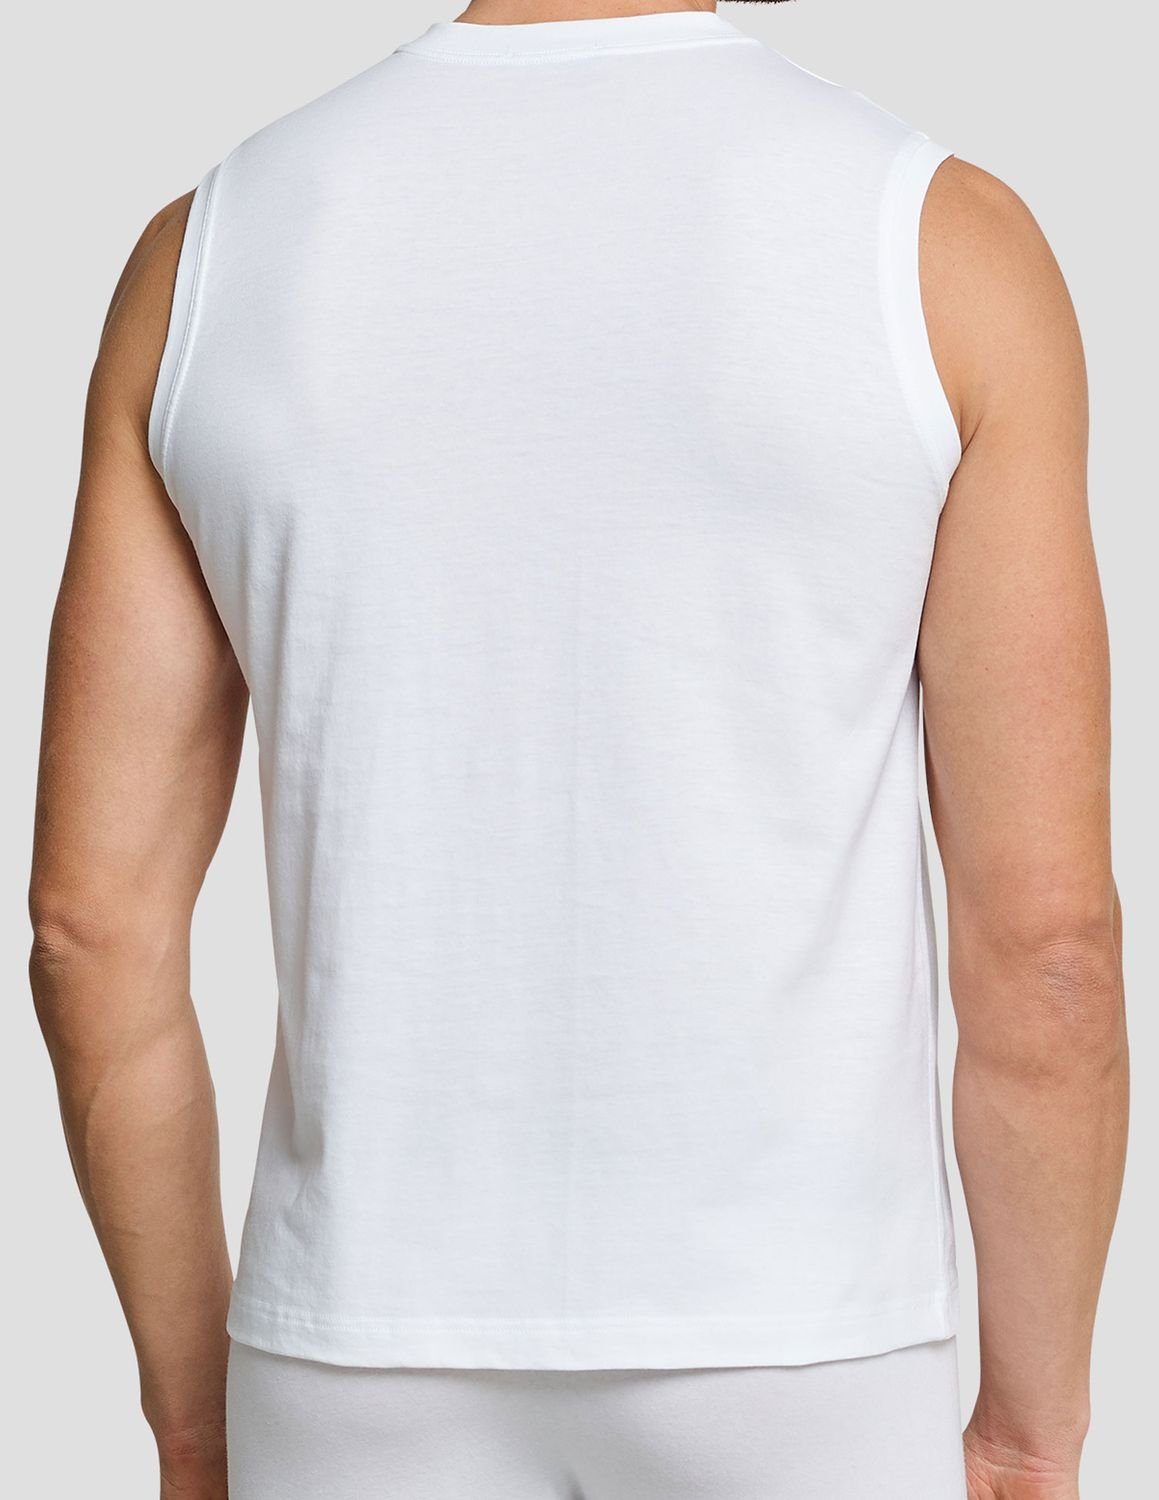 Schiesser Unterhemd Essentials (Mehrpack, im 4er Weiß Muskelshirt Pack ärmellos, 4-St)